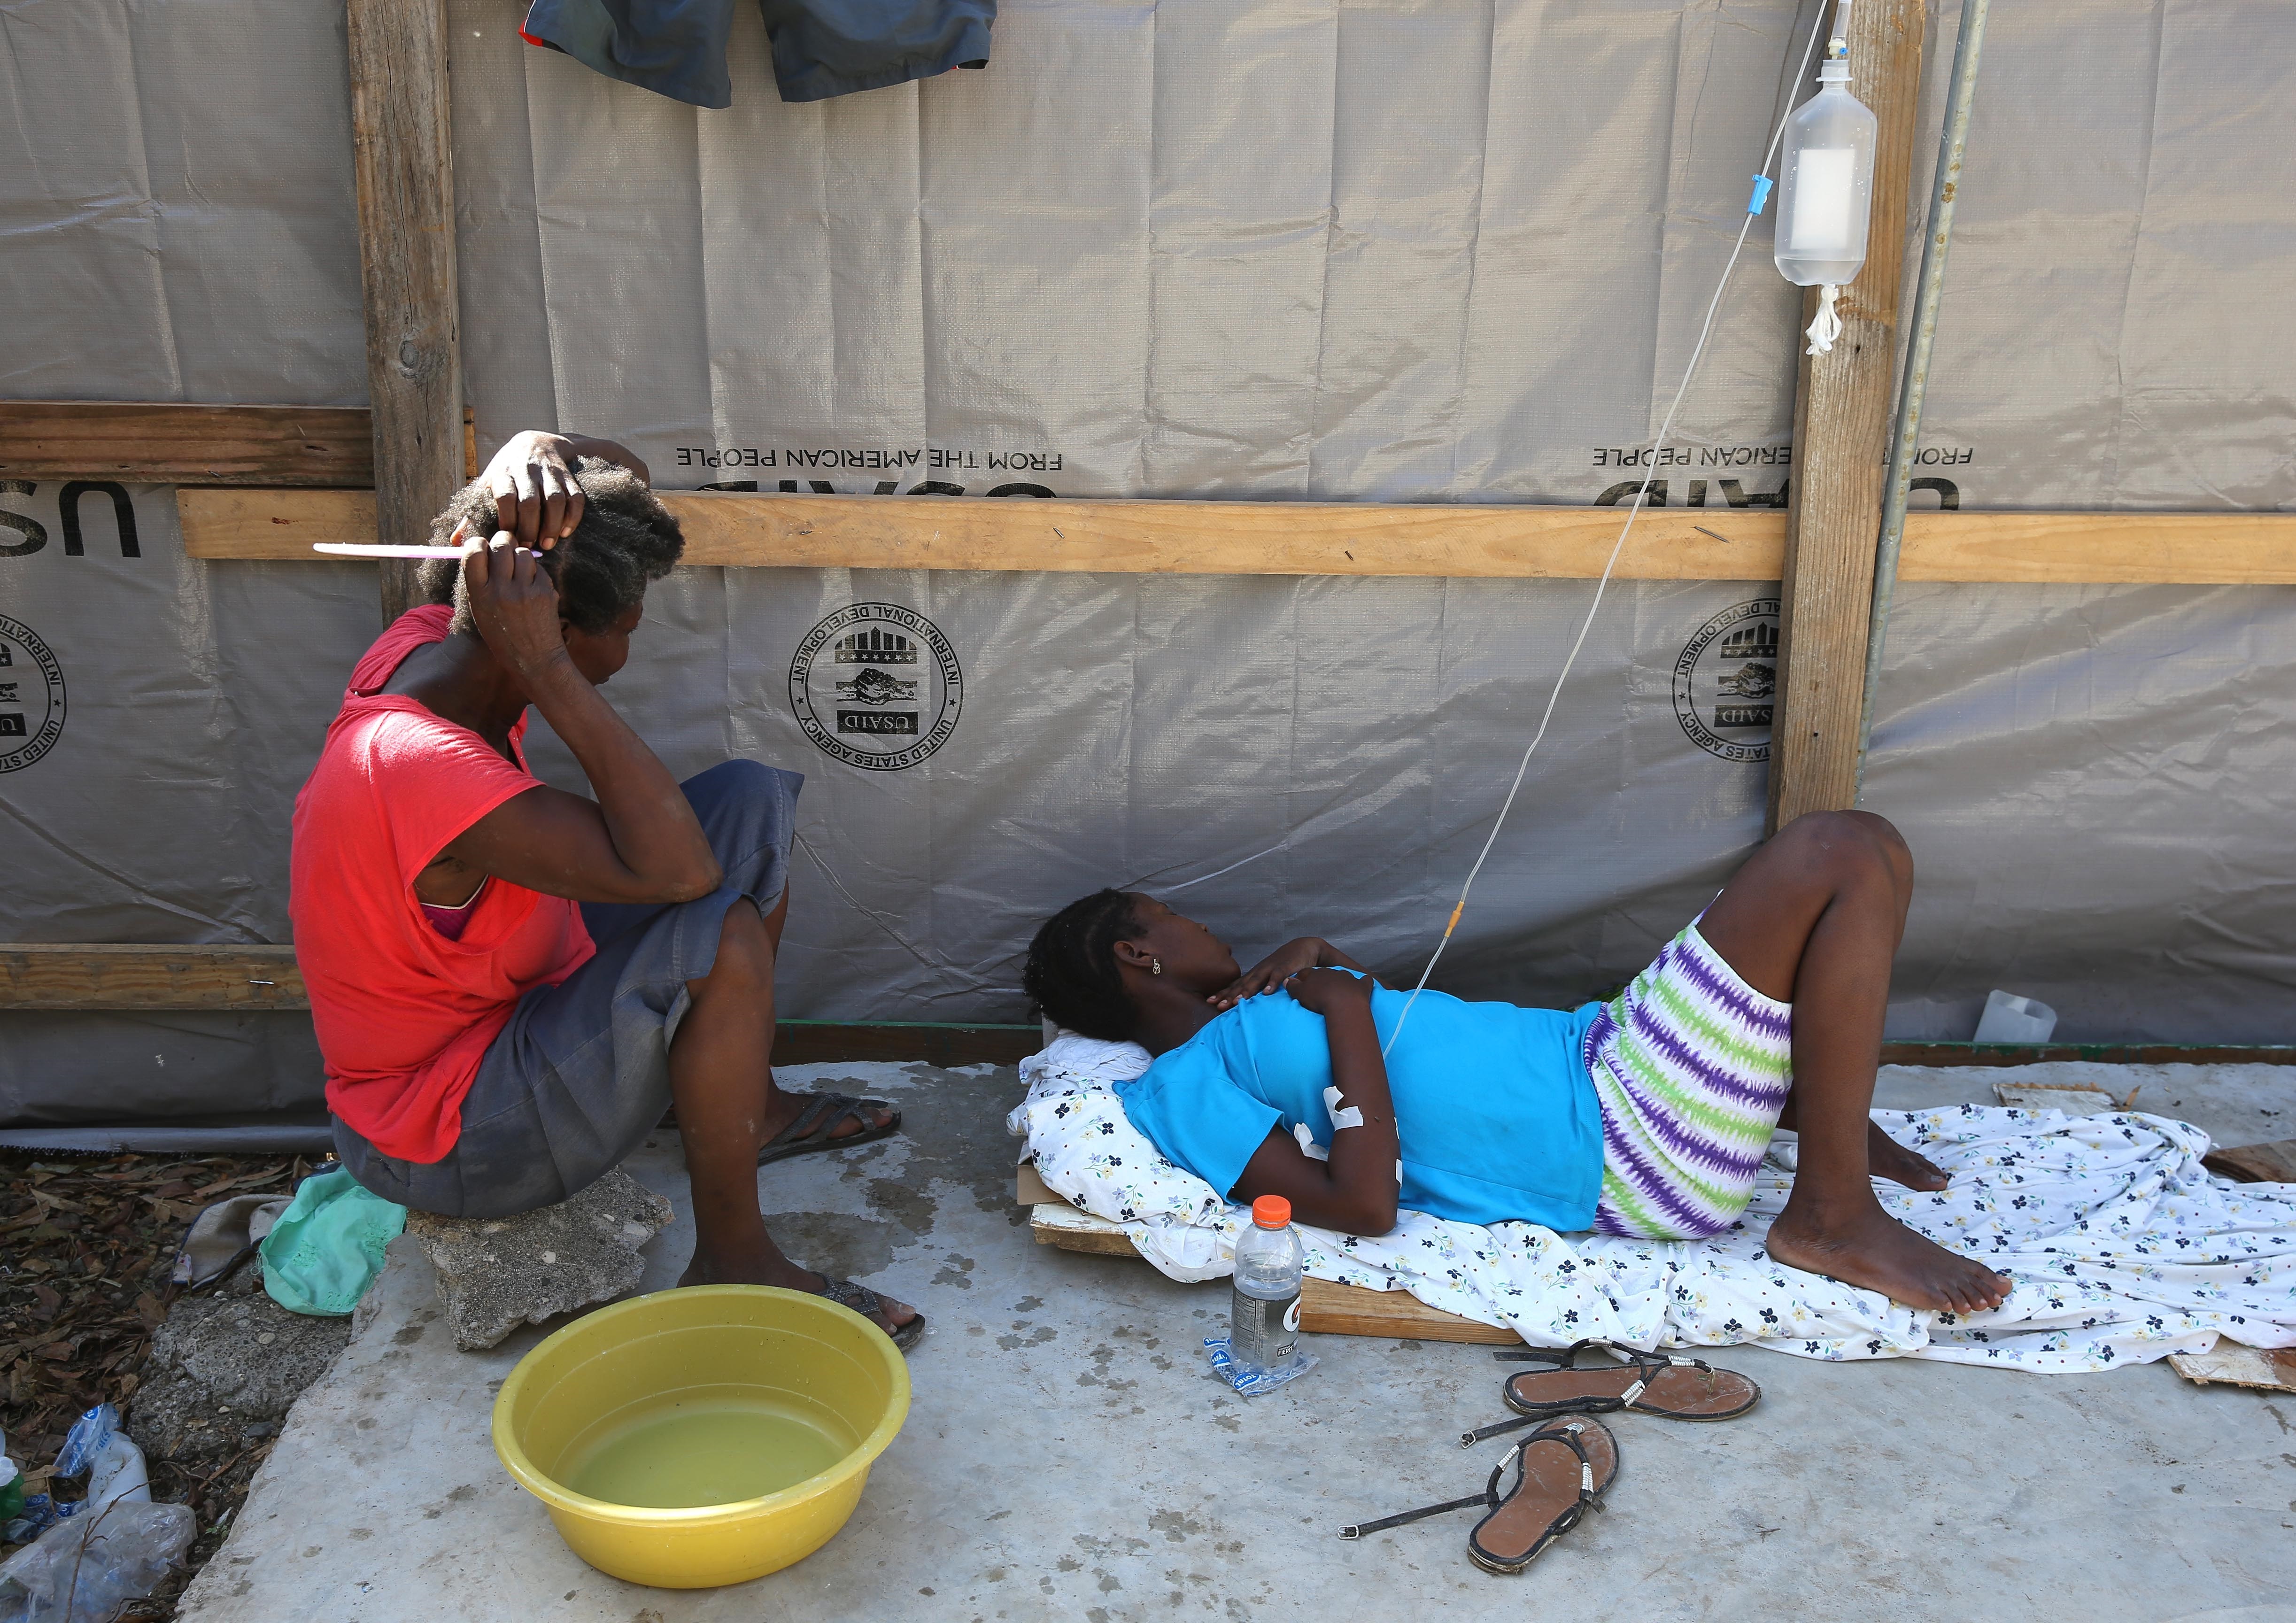 El cólera fue introducido en la nación en octubre de 2010 por las tropas nepalesas que formaban parte de la Misión de Estabilización de las Naciones Unidas en Haití (Minustah), causando al menos 10.000 muertes en el país. EFE/Orlando Barría/Archivo
